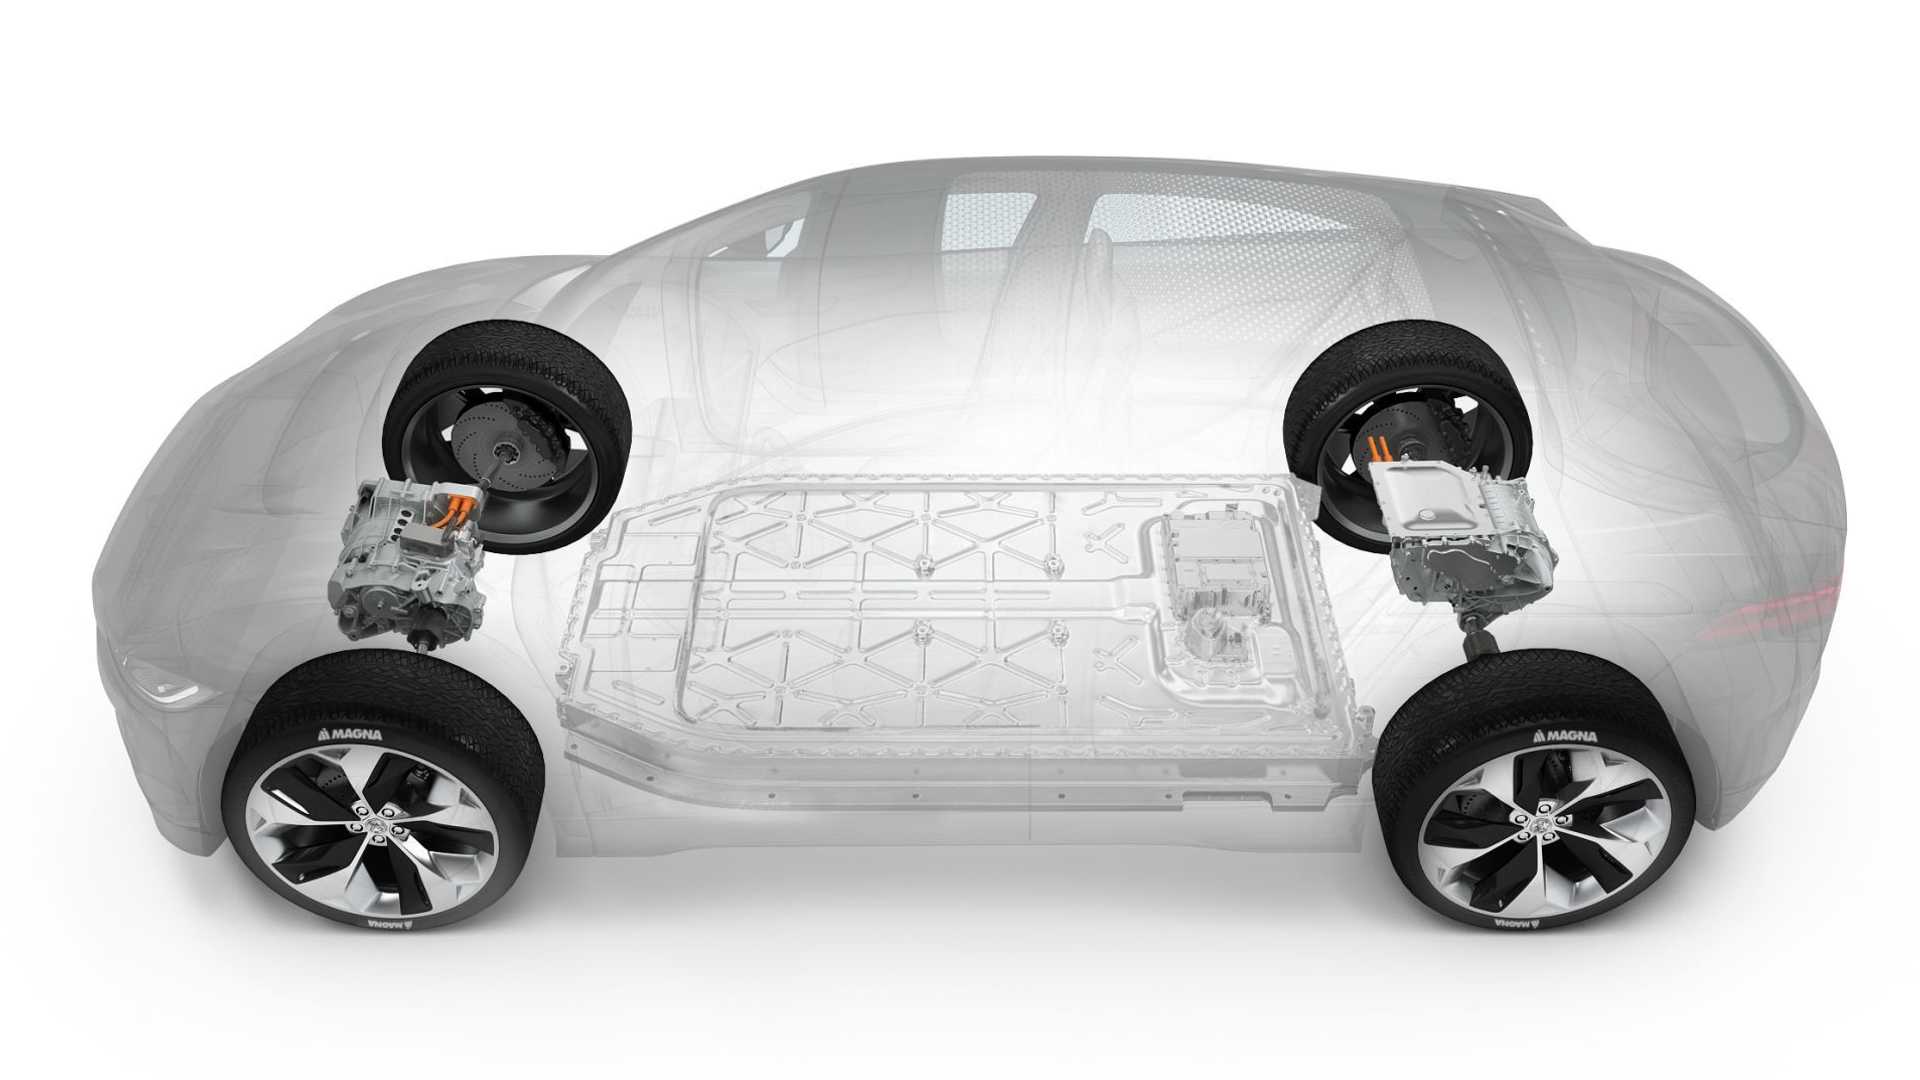 Magna - motor inteligente - carro elétrico - autonomia - motor - baterias